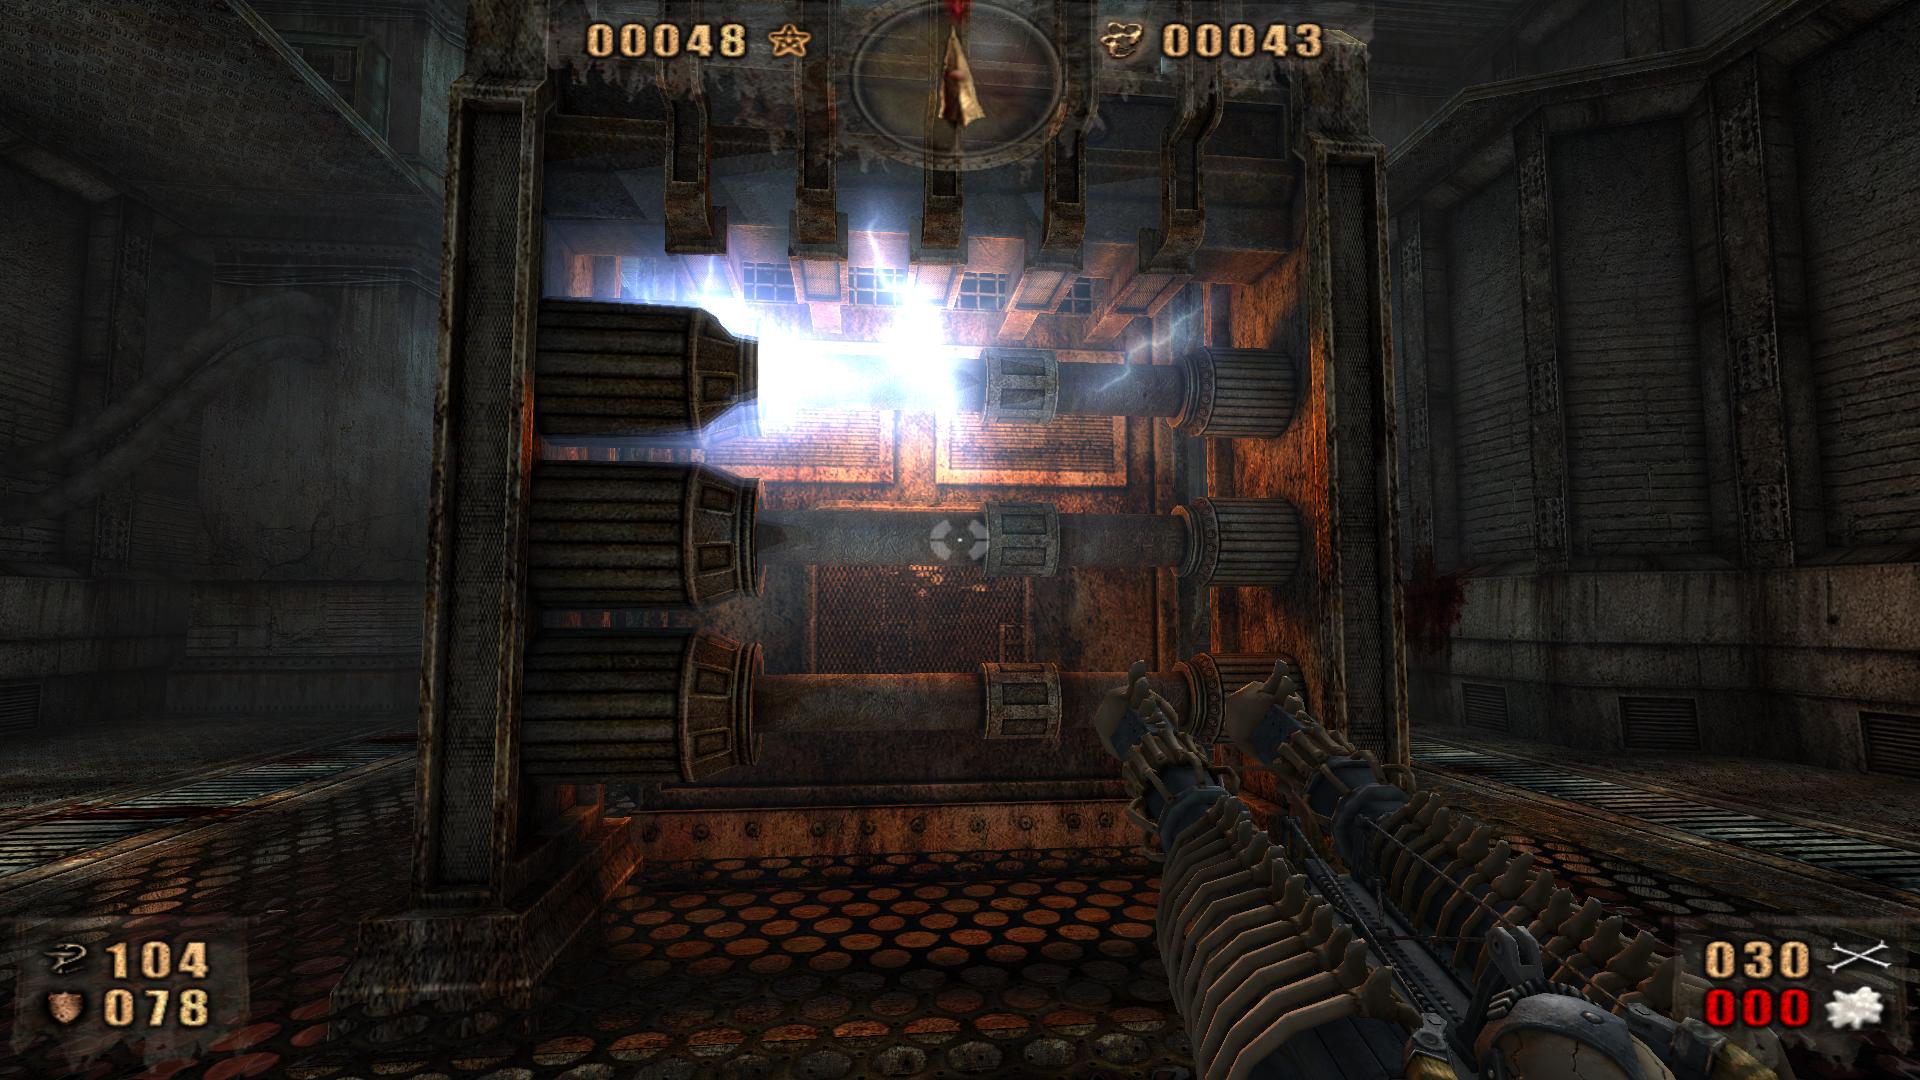 Painkiller Redemption screenshot